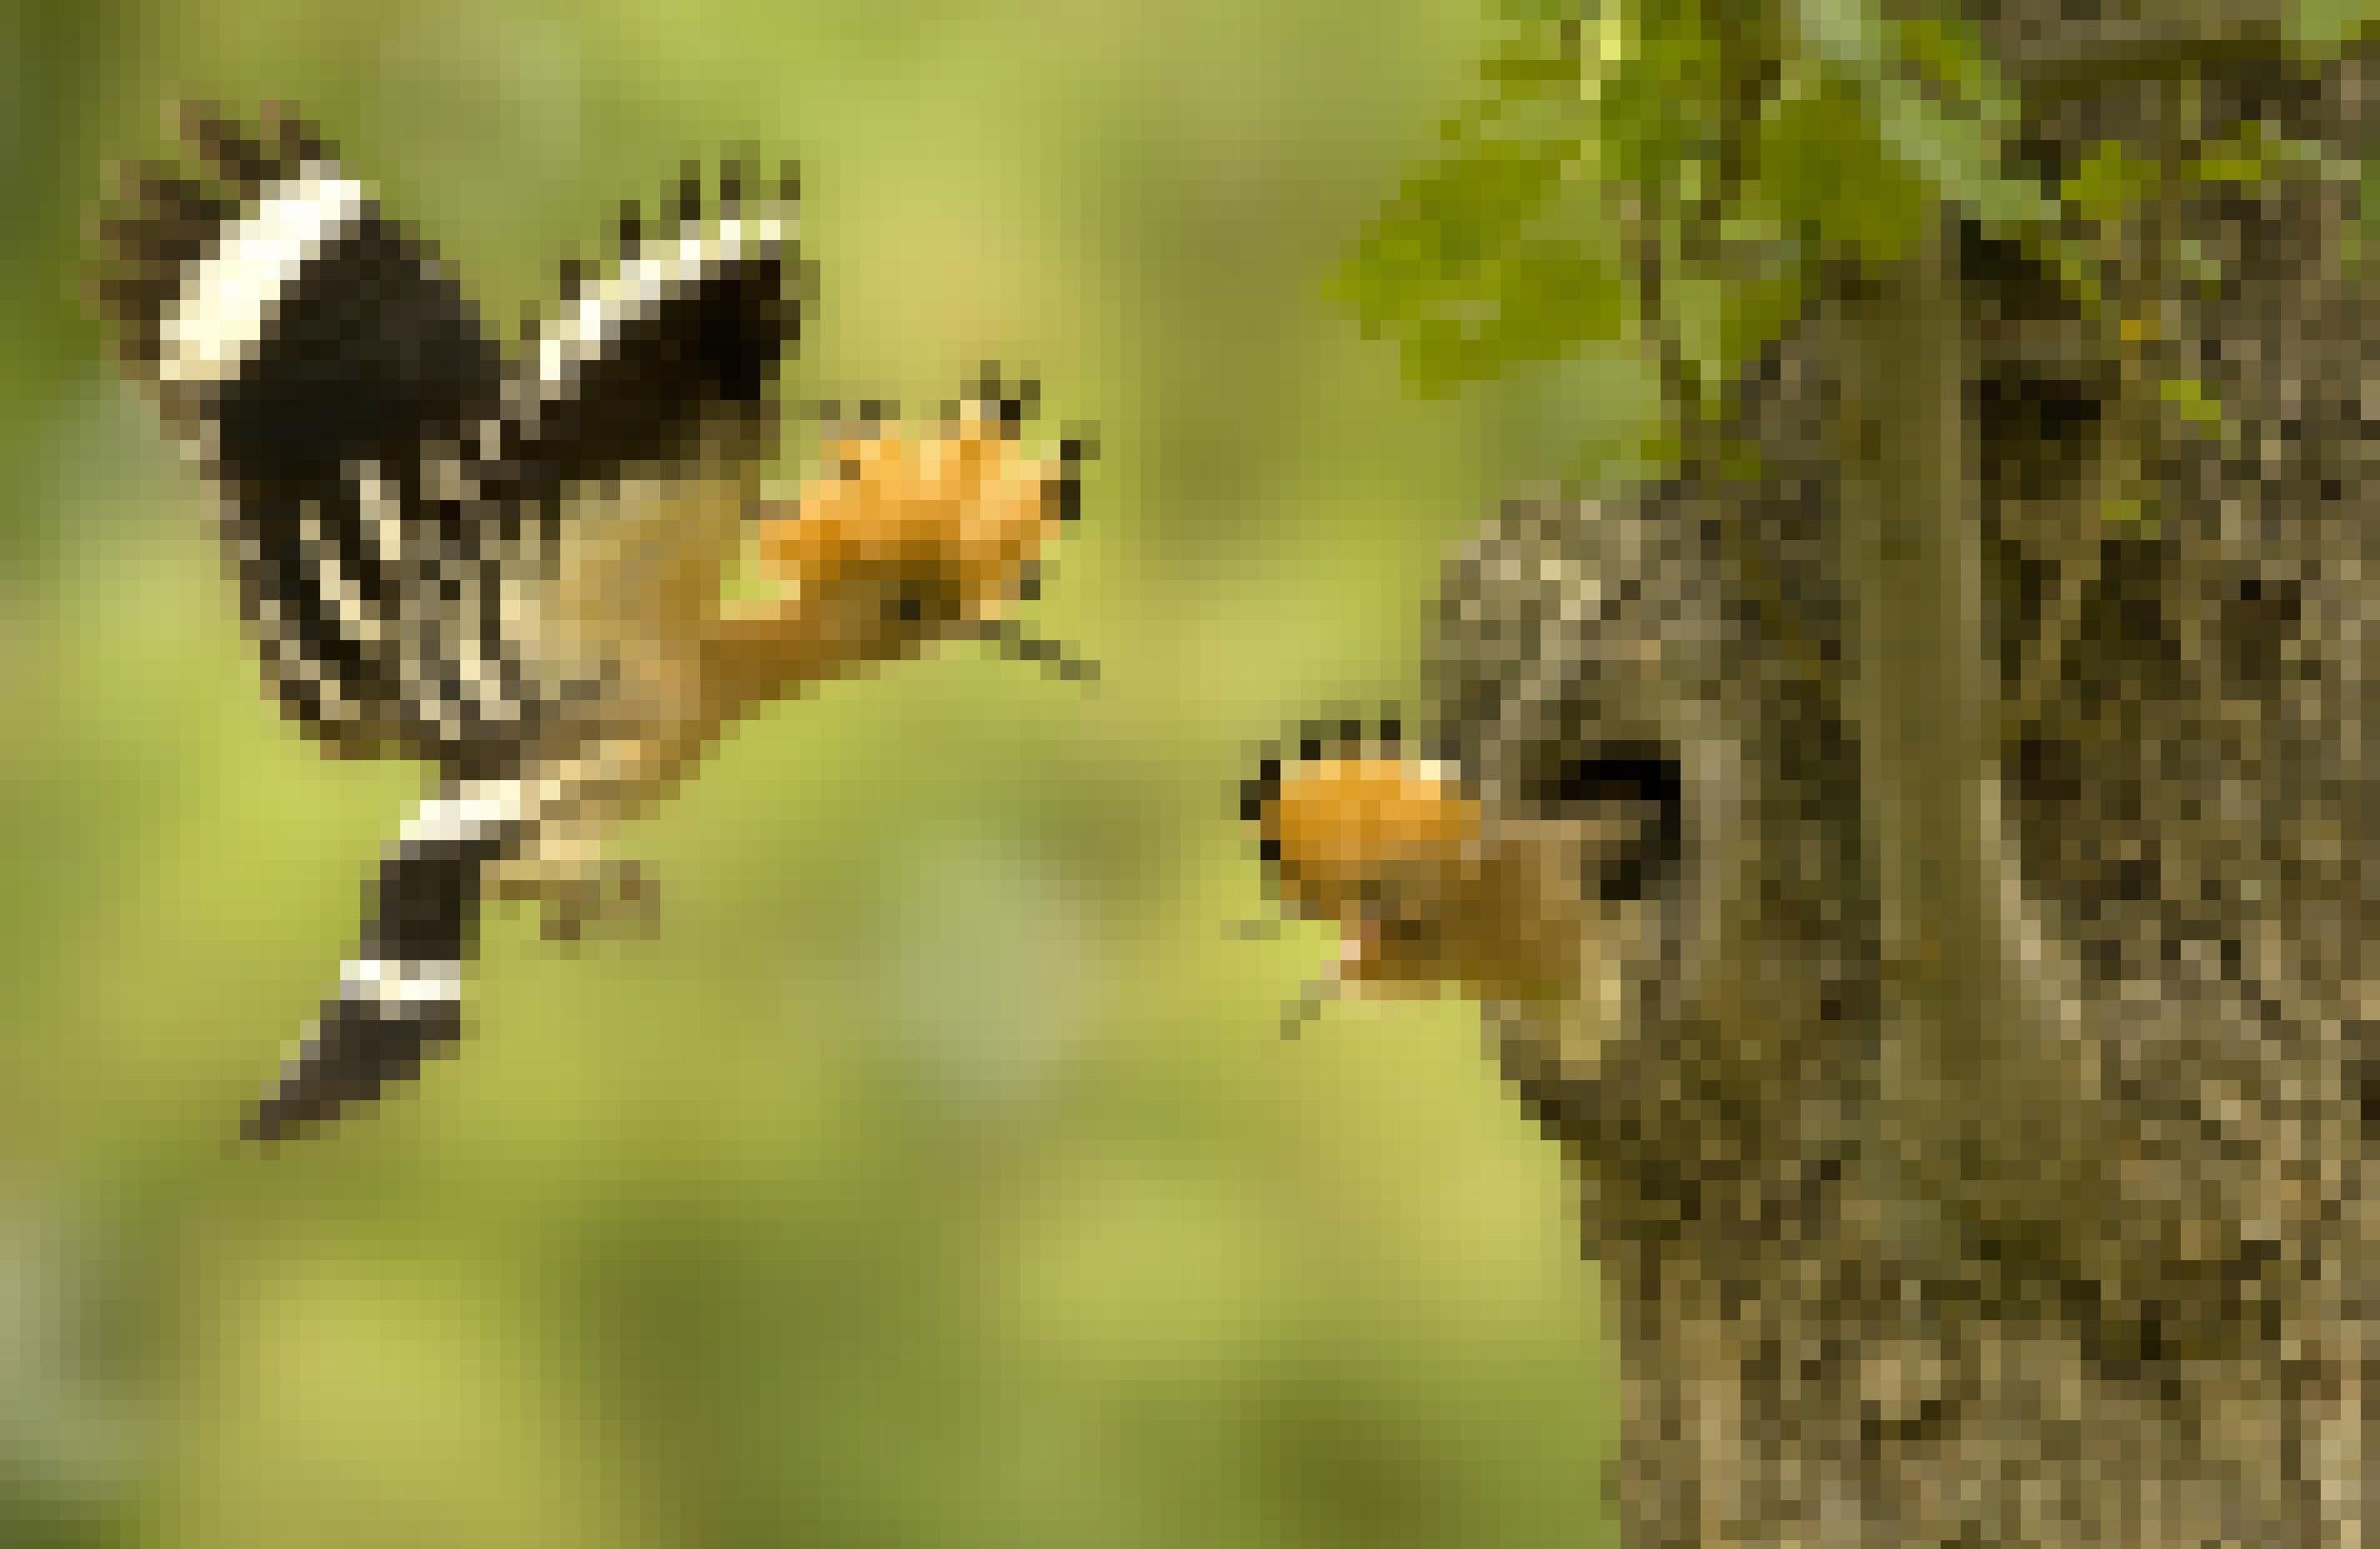 Ein Wiedehopf kommt mit einer Grille im Schnabel zu seiner Höhle in einem Apfelbaum, aus der ein fast flügger Jungvogel mit aufgerichteter Haube schaut.